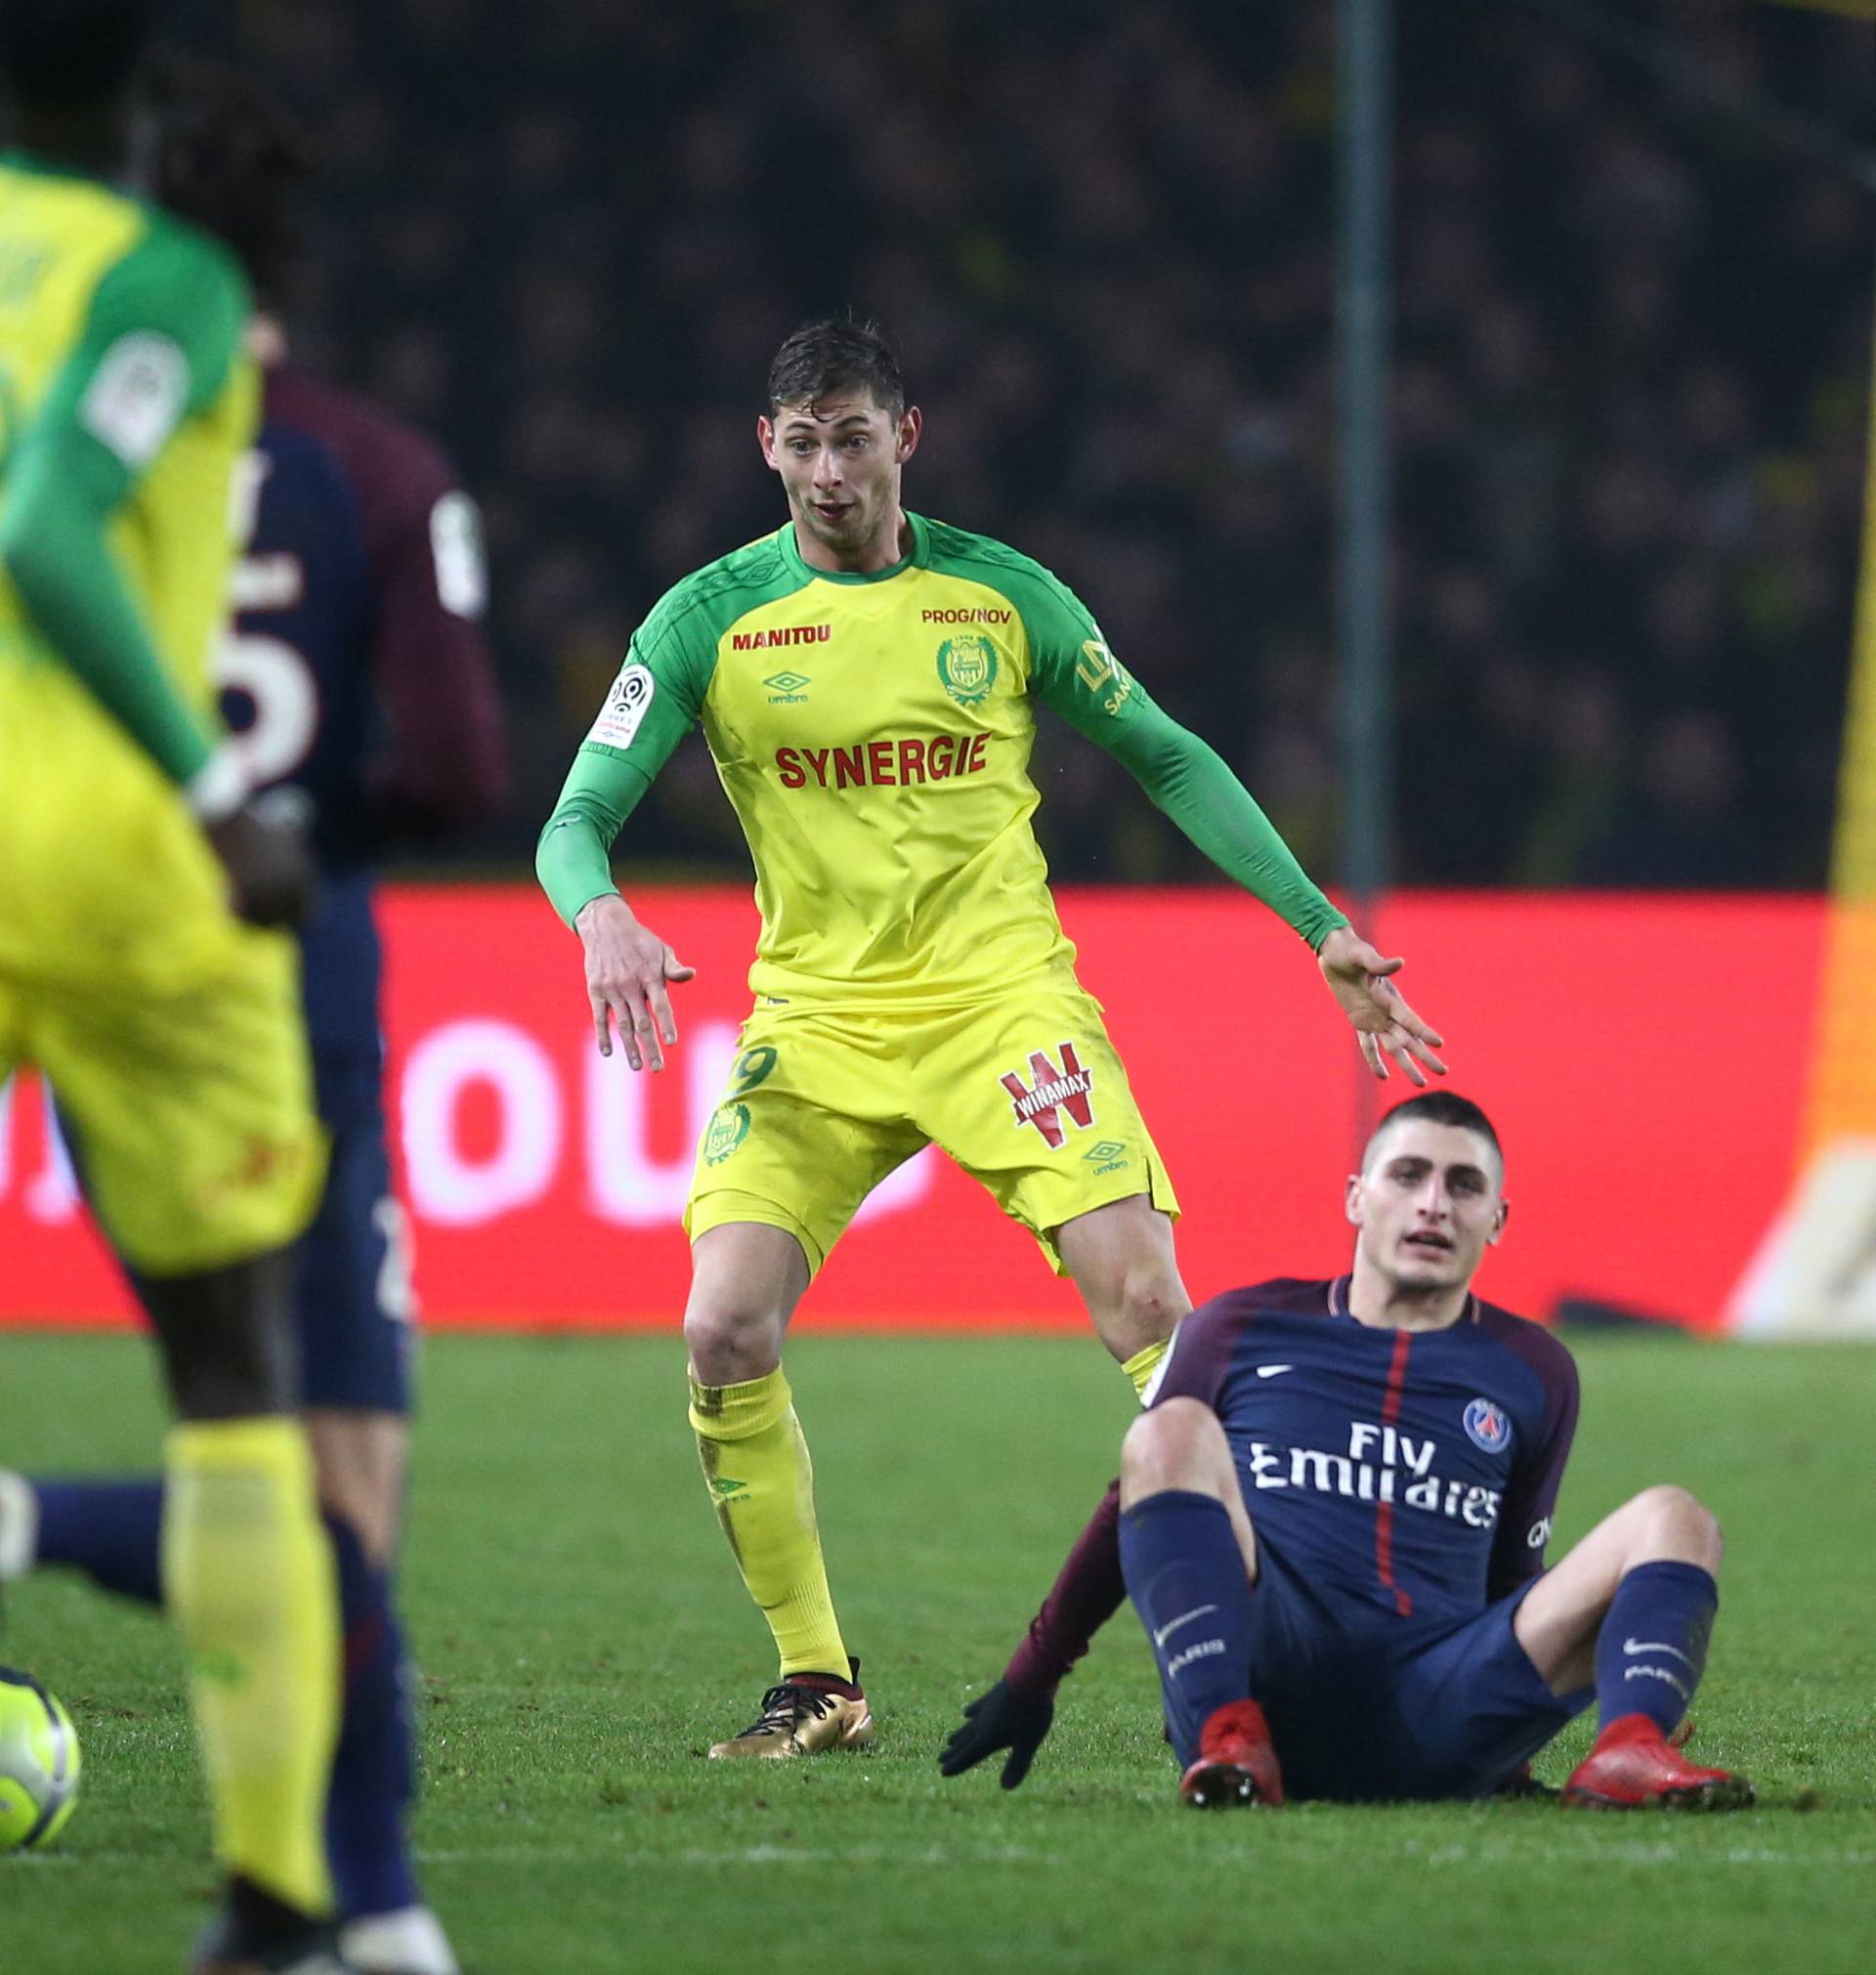 Paris Saint-GermainÃs Marco Verratti in action with Nantes' Emiliano Sala